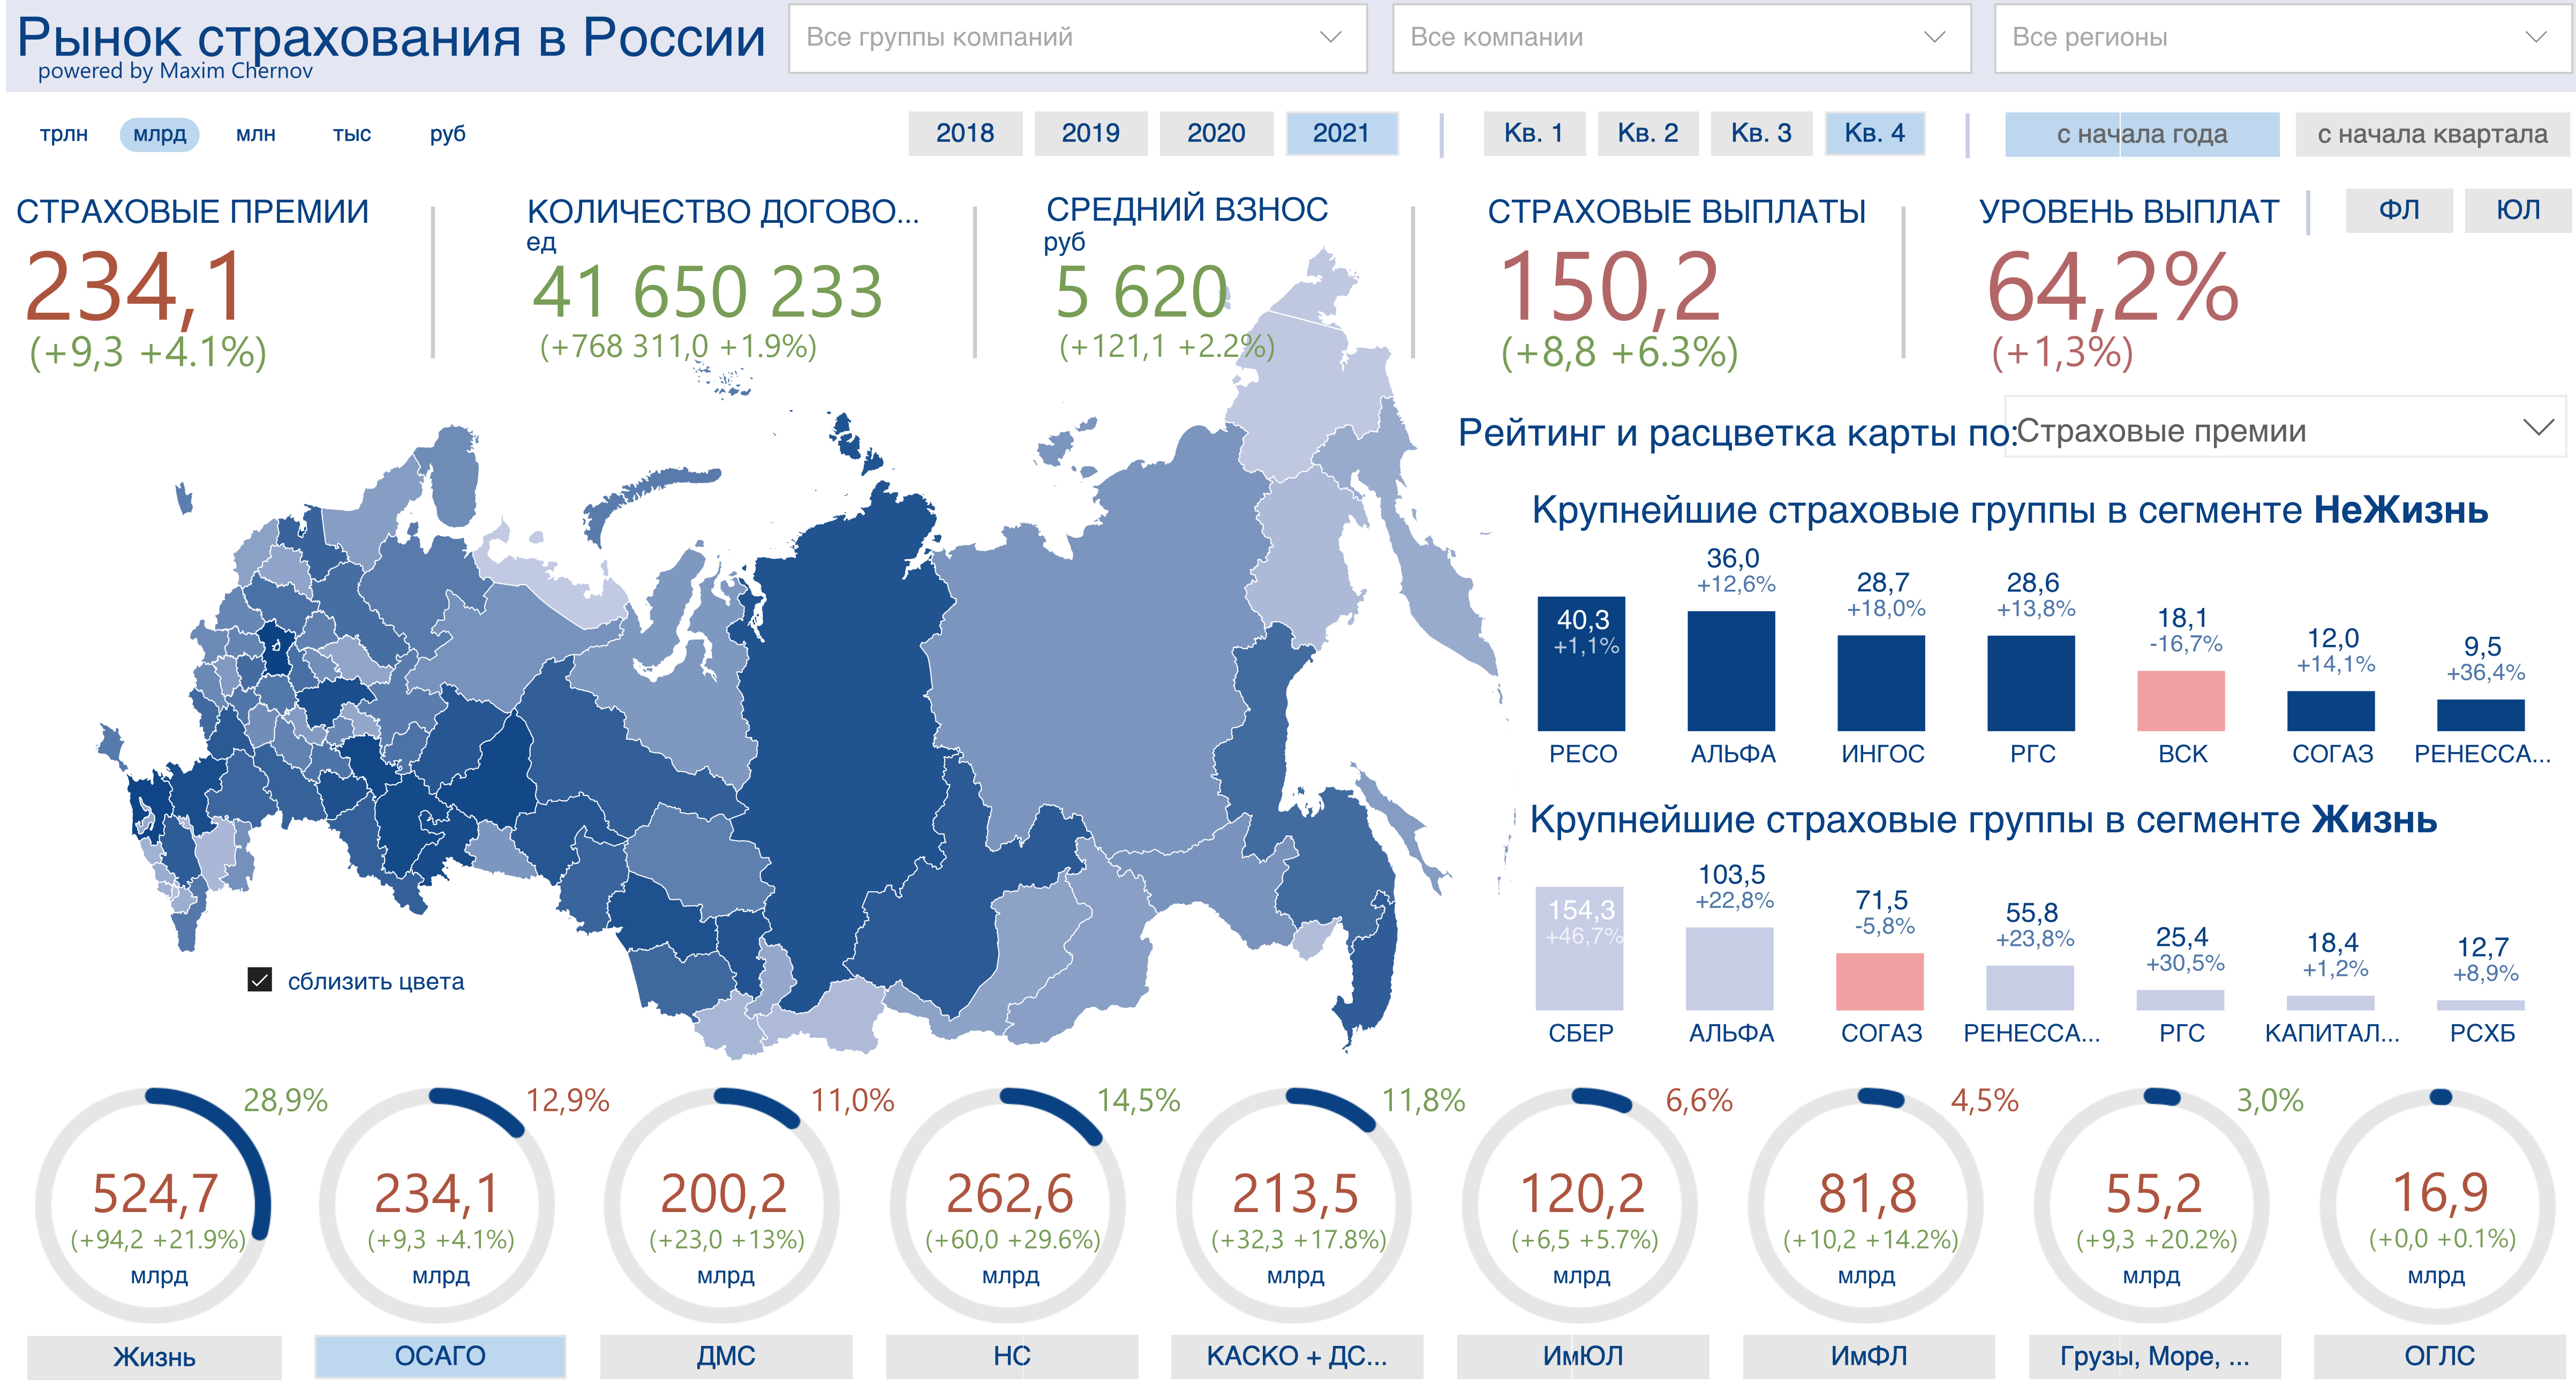 Полис ОСАГО в 2021 году подорожал на 120 рублей - 2%